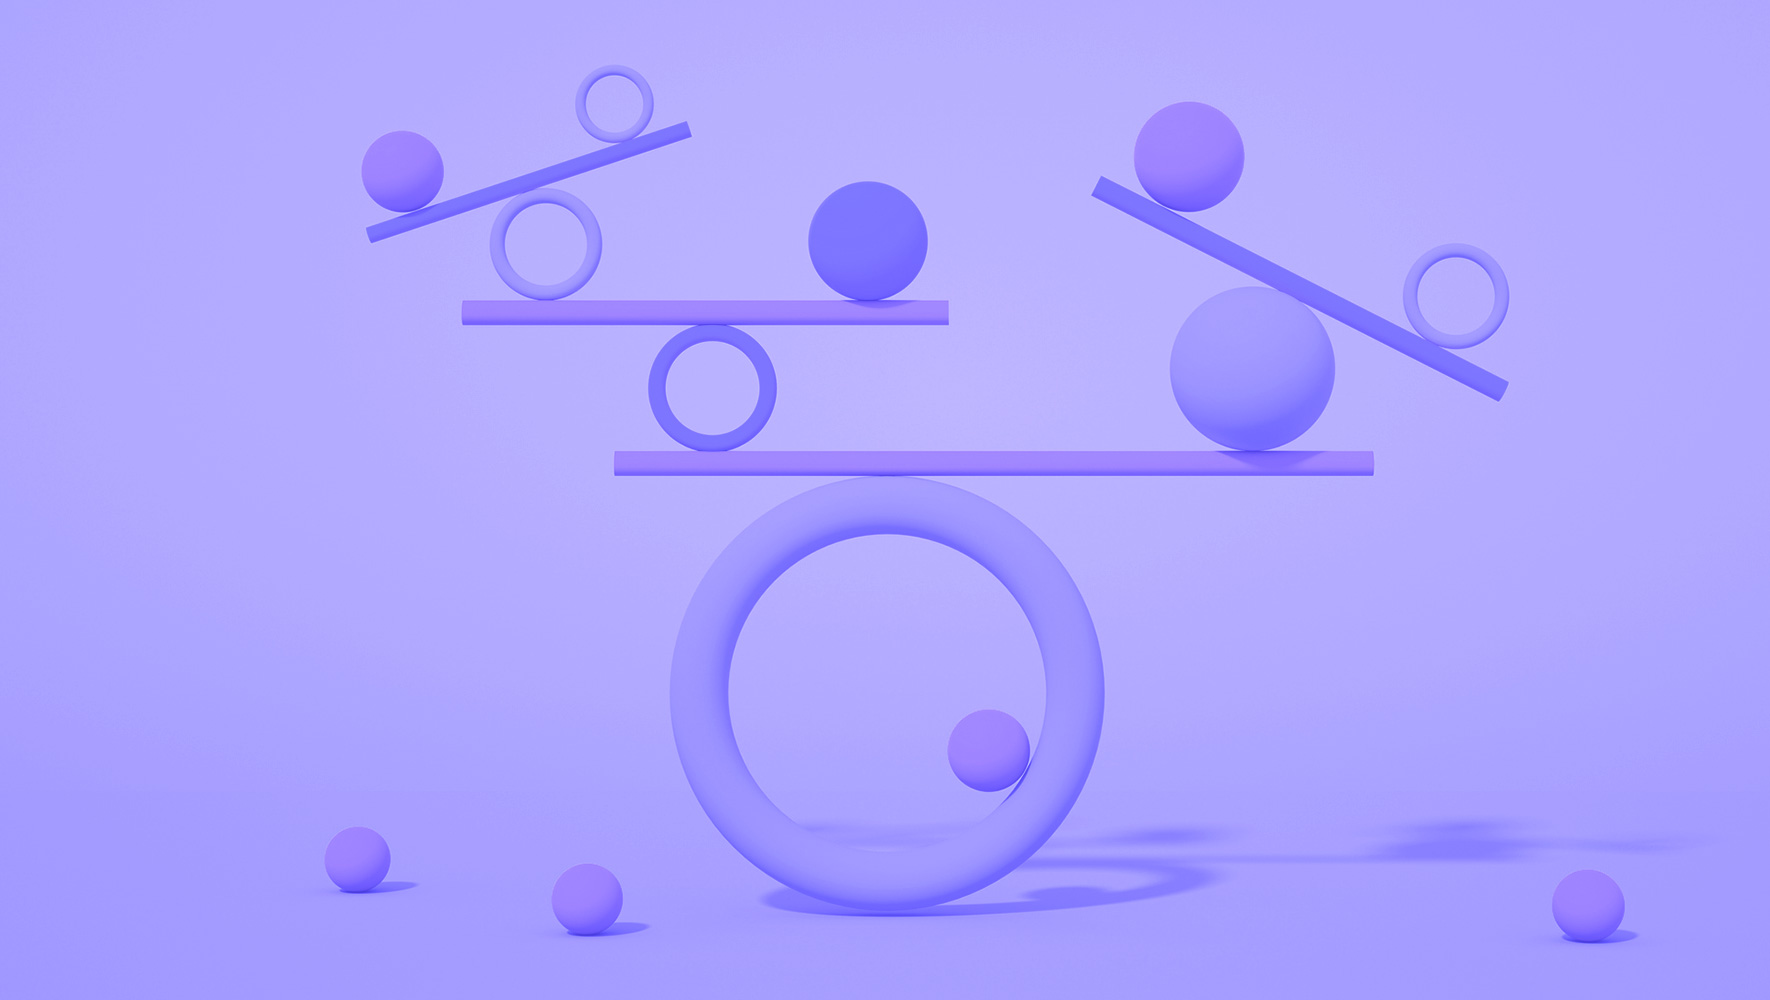 3D models of balls balancing